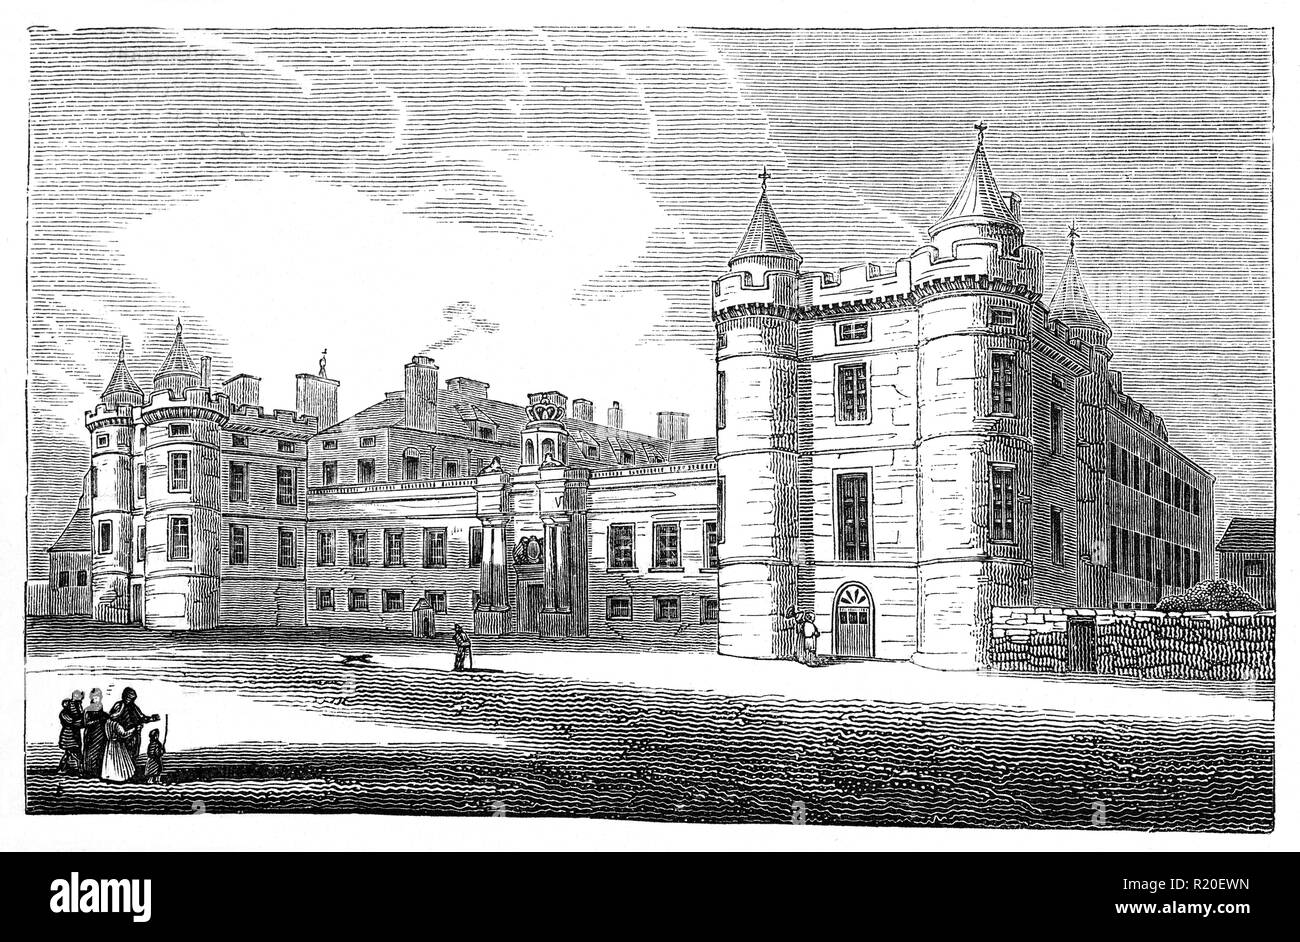 Il XVII secolo, Holyrood Palace è la residenza ufficiale del monarca britannico in Scozia. Situato nella parte inferiore del Royal Mile di Edimburgo, all'estremità opposta al Castello di Edimburgo, Holyrood Palace ha servito come la residenza principale dei Re e delle regine della Scozia. Foto Stock